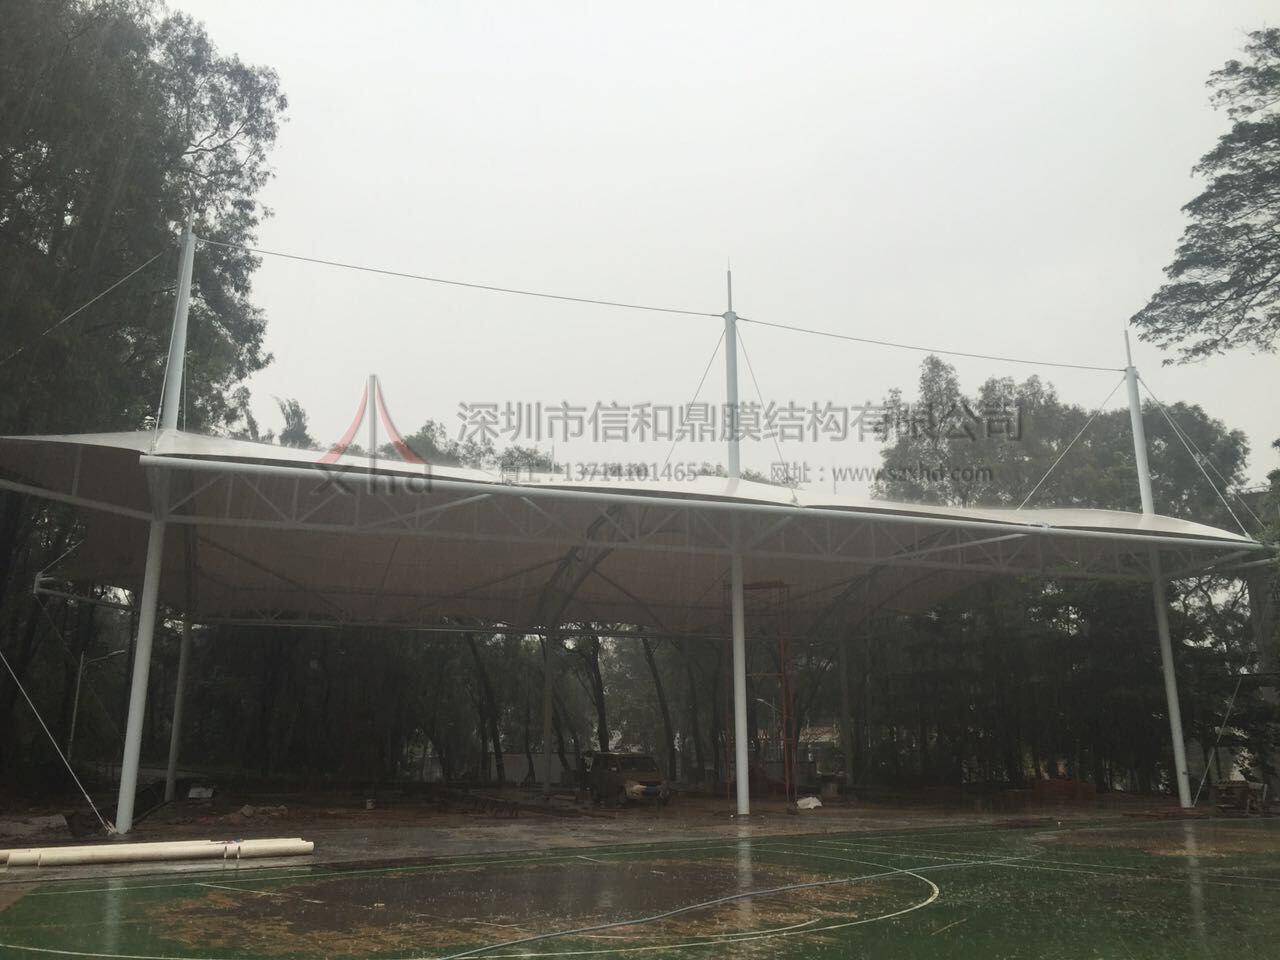 华南理工球场改造工程膜结构遮阳雨棚项目顺利竣工